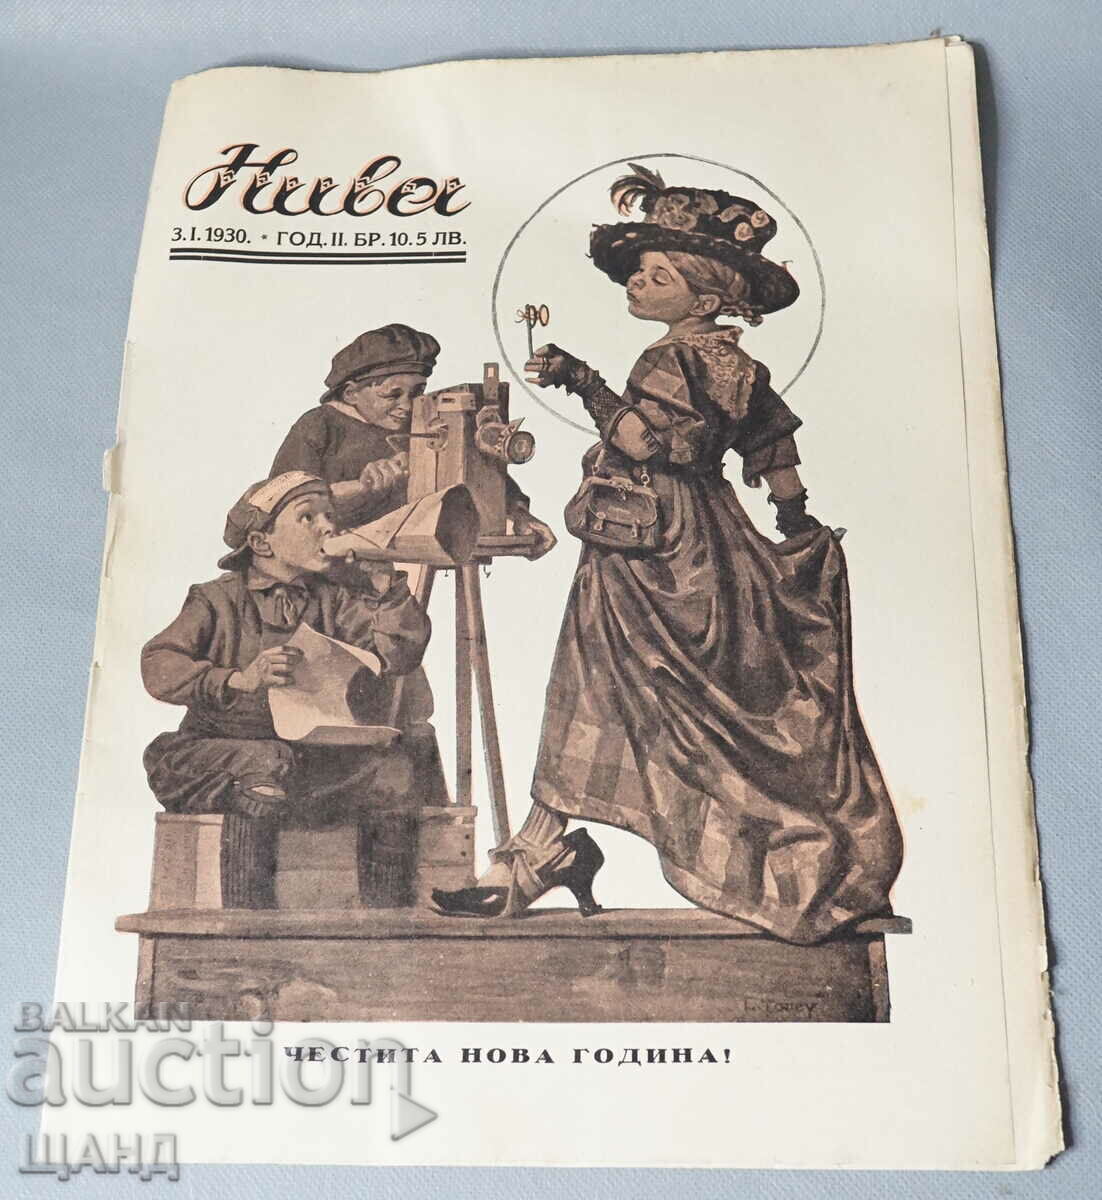 1930 Bulgaria Niva magazine issue 10 Happy New Year